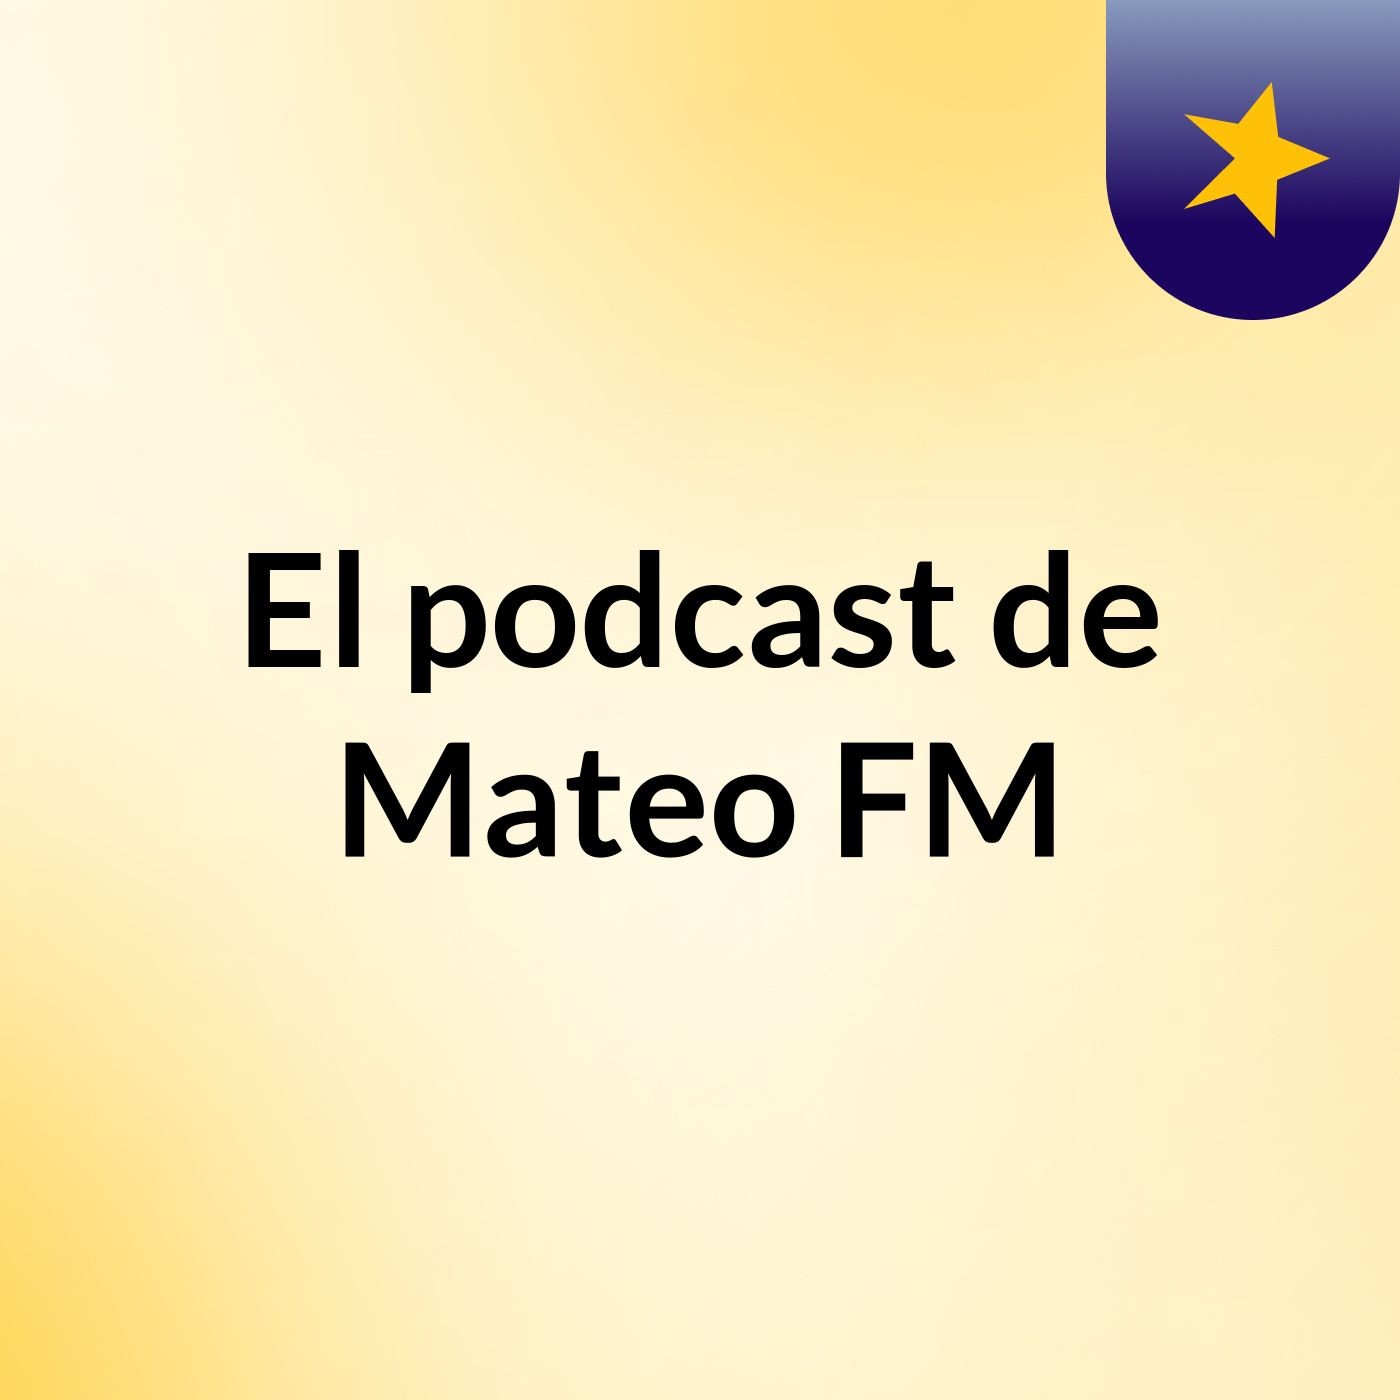 El podcast de Mateo FM